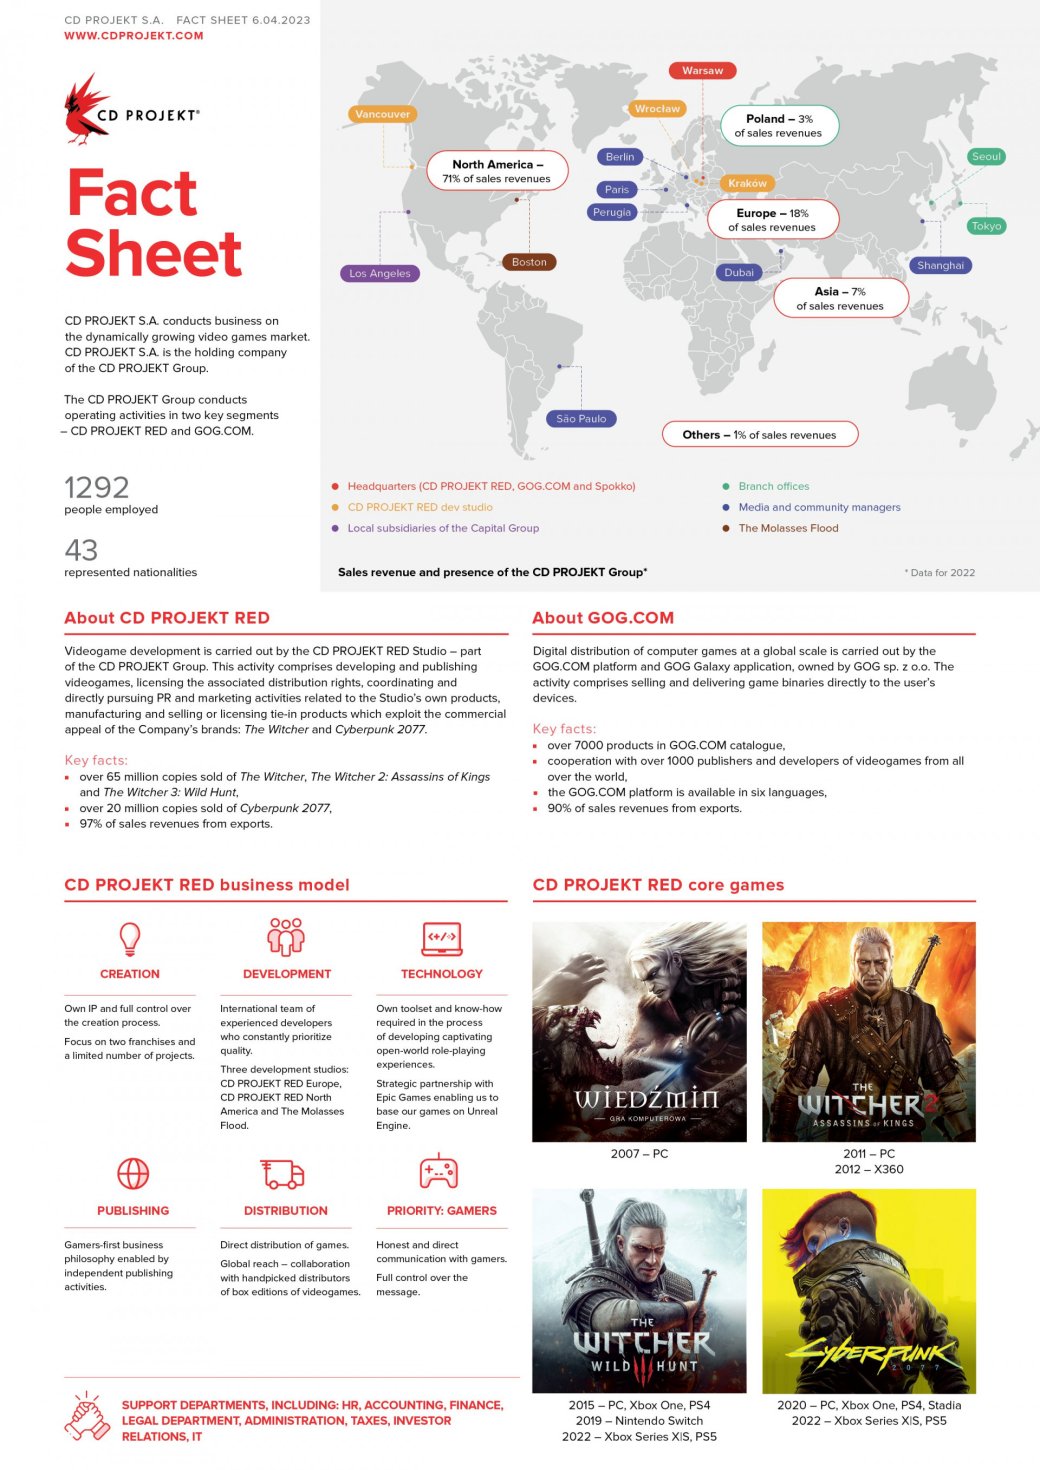 Галерея CD Projekt поделилась инфографикой о компании - 2 фото